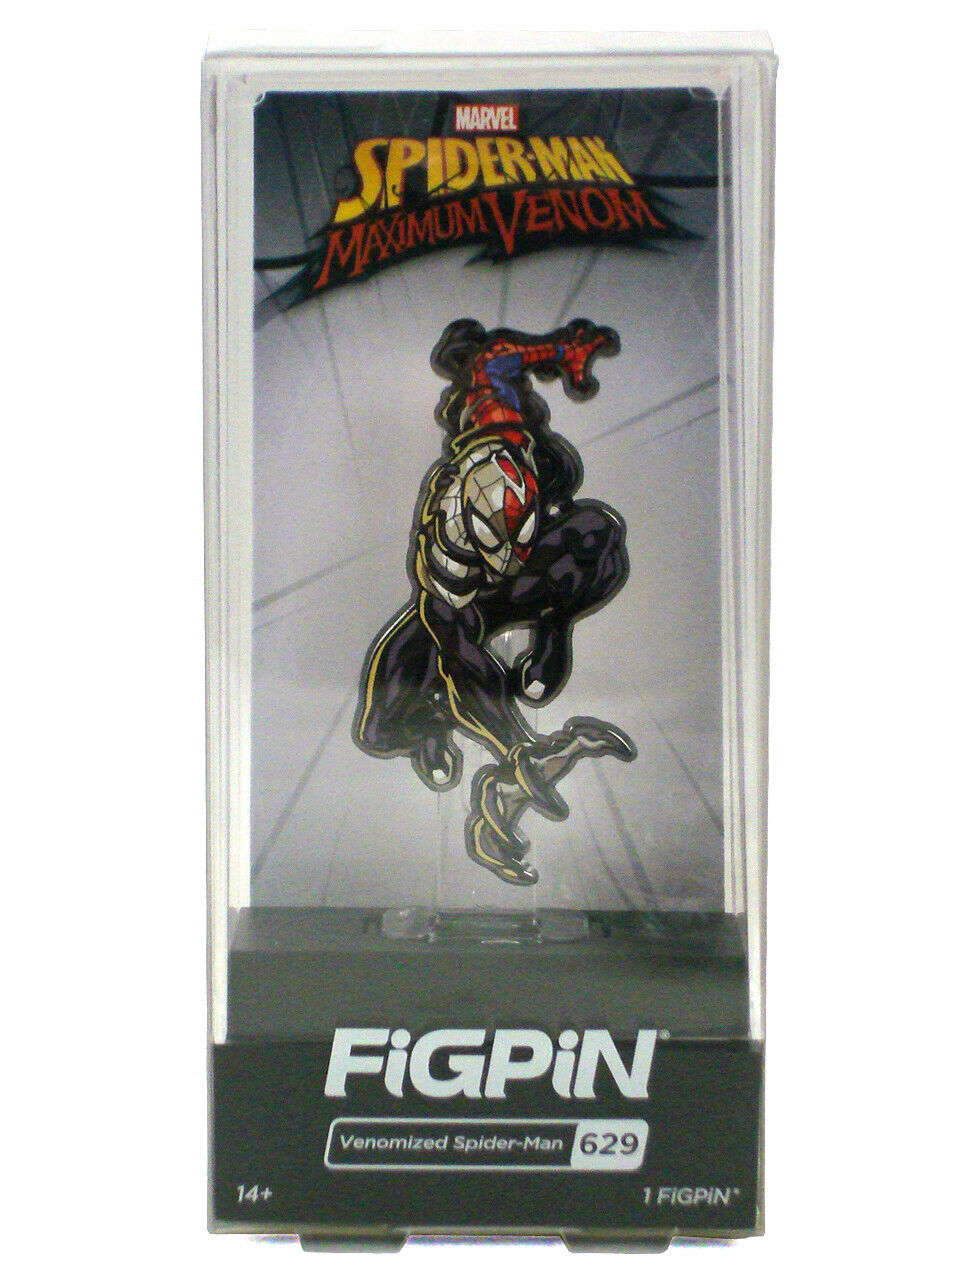 Figpin Venomized Spider-Man #629 Enamel Pin Maximum Venom